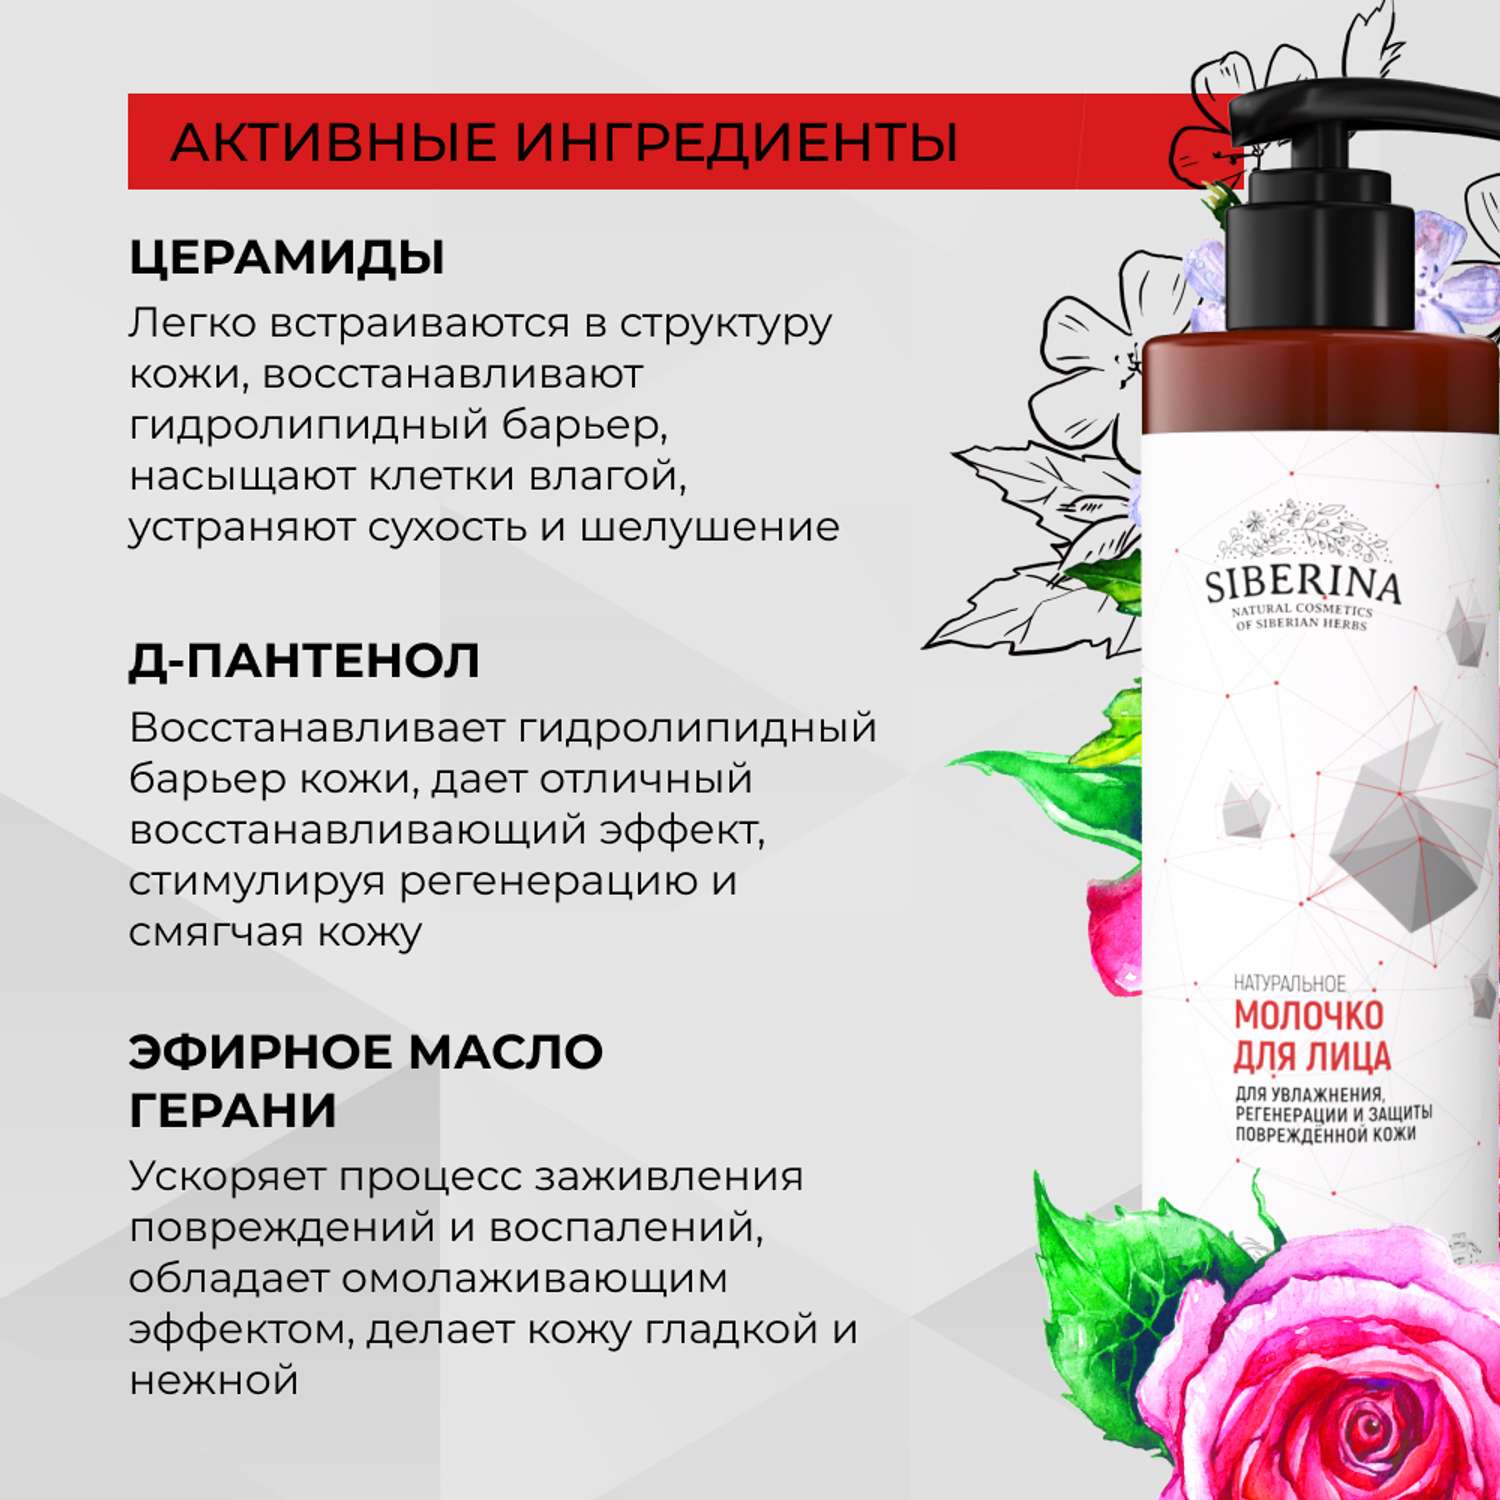 Молочко для лица Siberina натуральное для увлажнения и защиты поврежденной кожи с церамидами 200 мл - фото 4